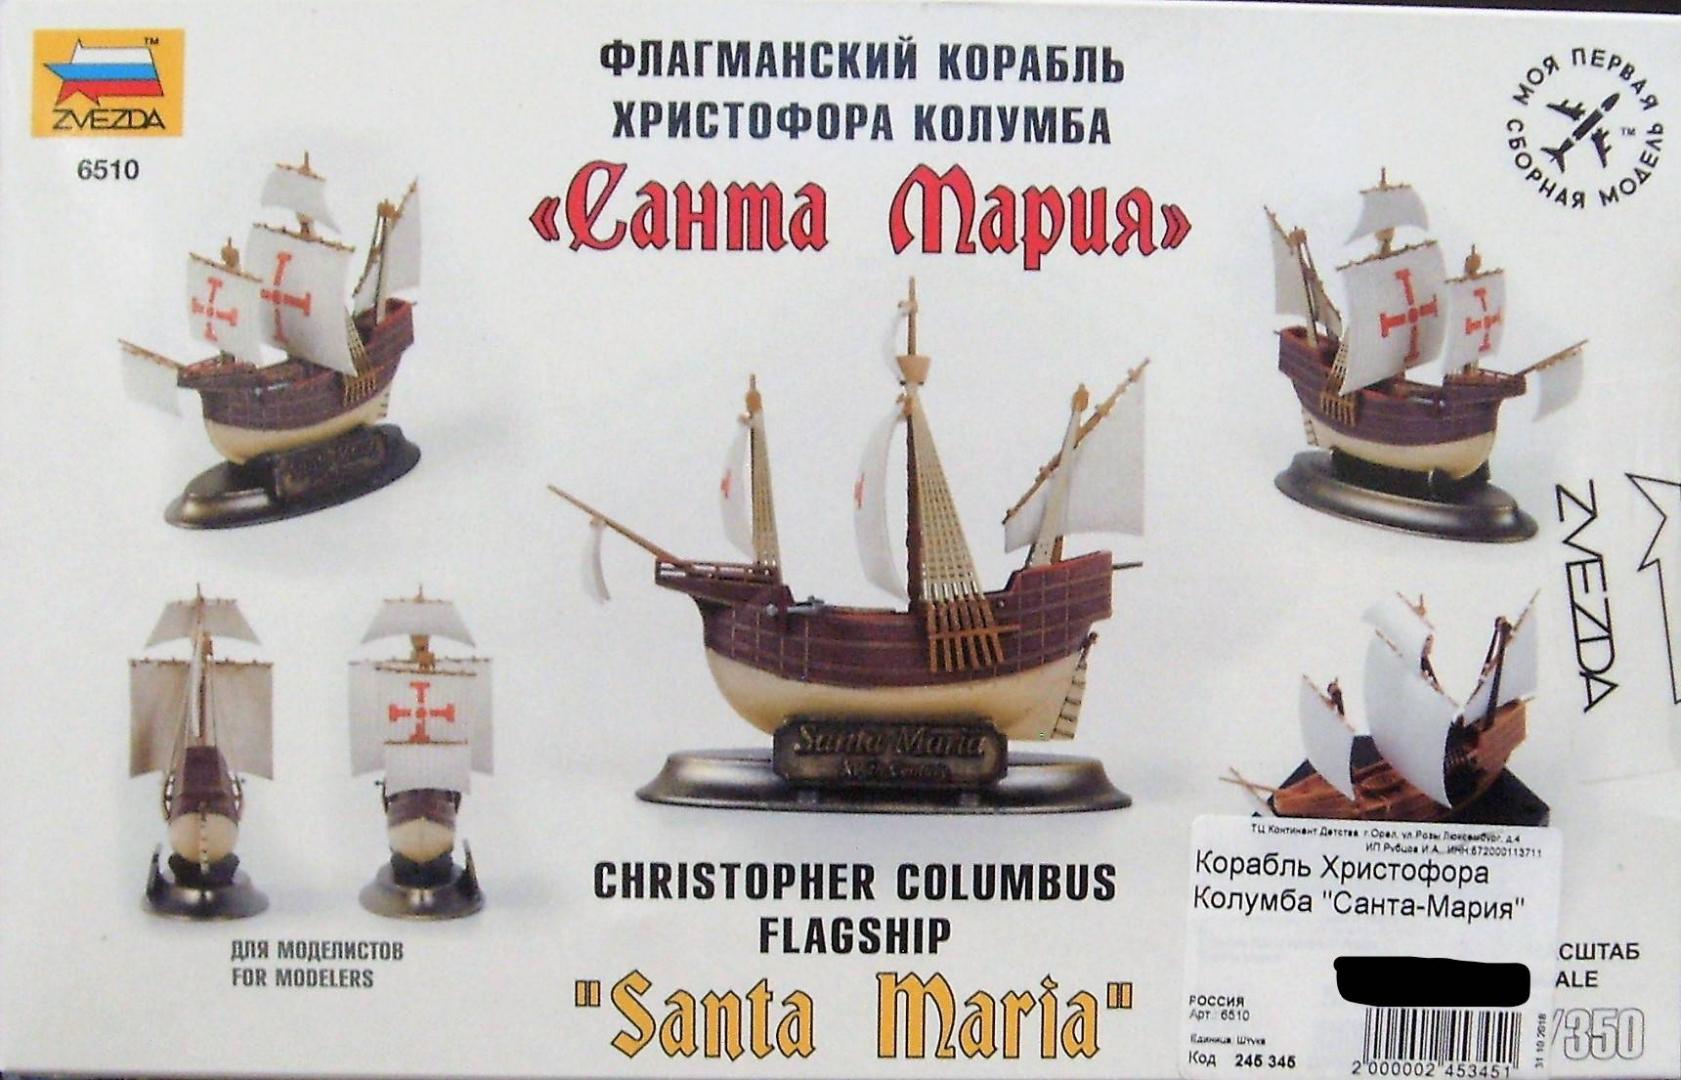 Иллюстрация 18 из 18 для Флагманский корабль Христофора Колумба "Санта-Мария" (6510) | Лабиринт - игрушки. Источник: Соловьев  Владимир